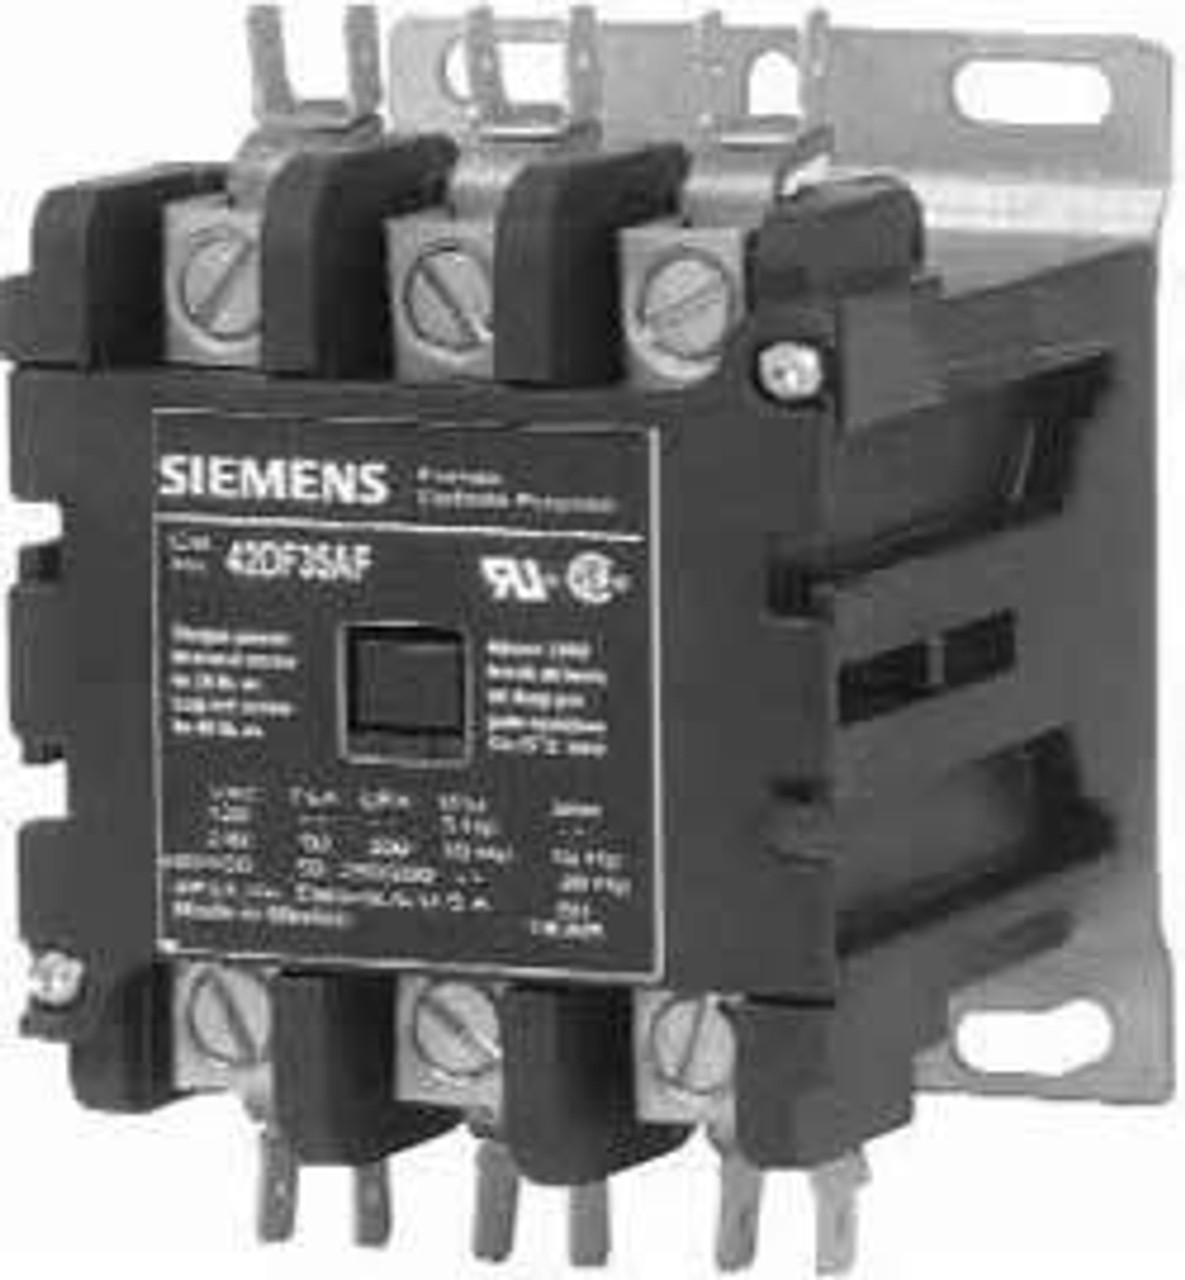 Siemens/Furnas 42BF35AF contactor